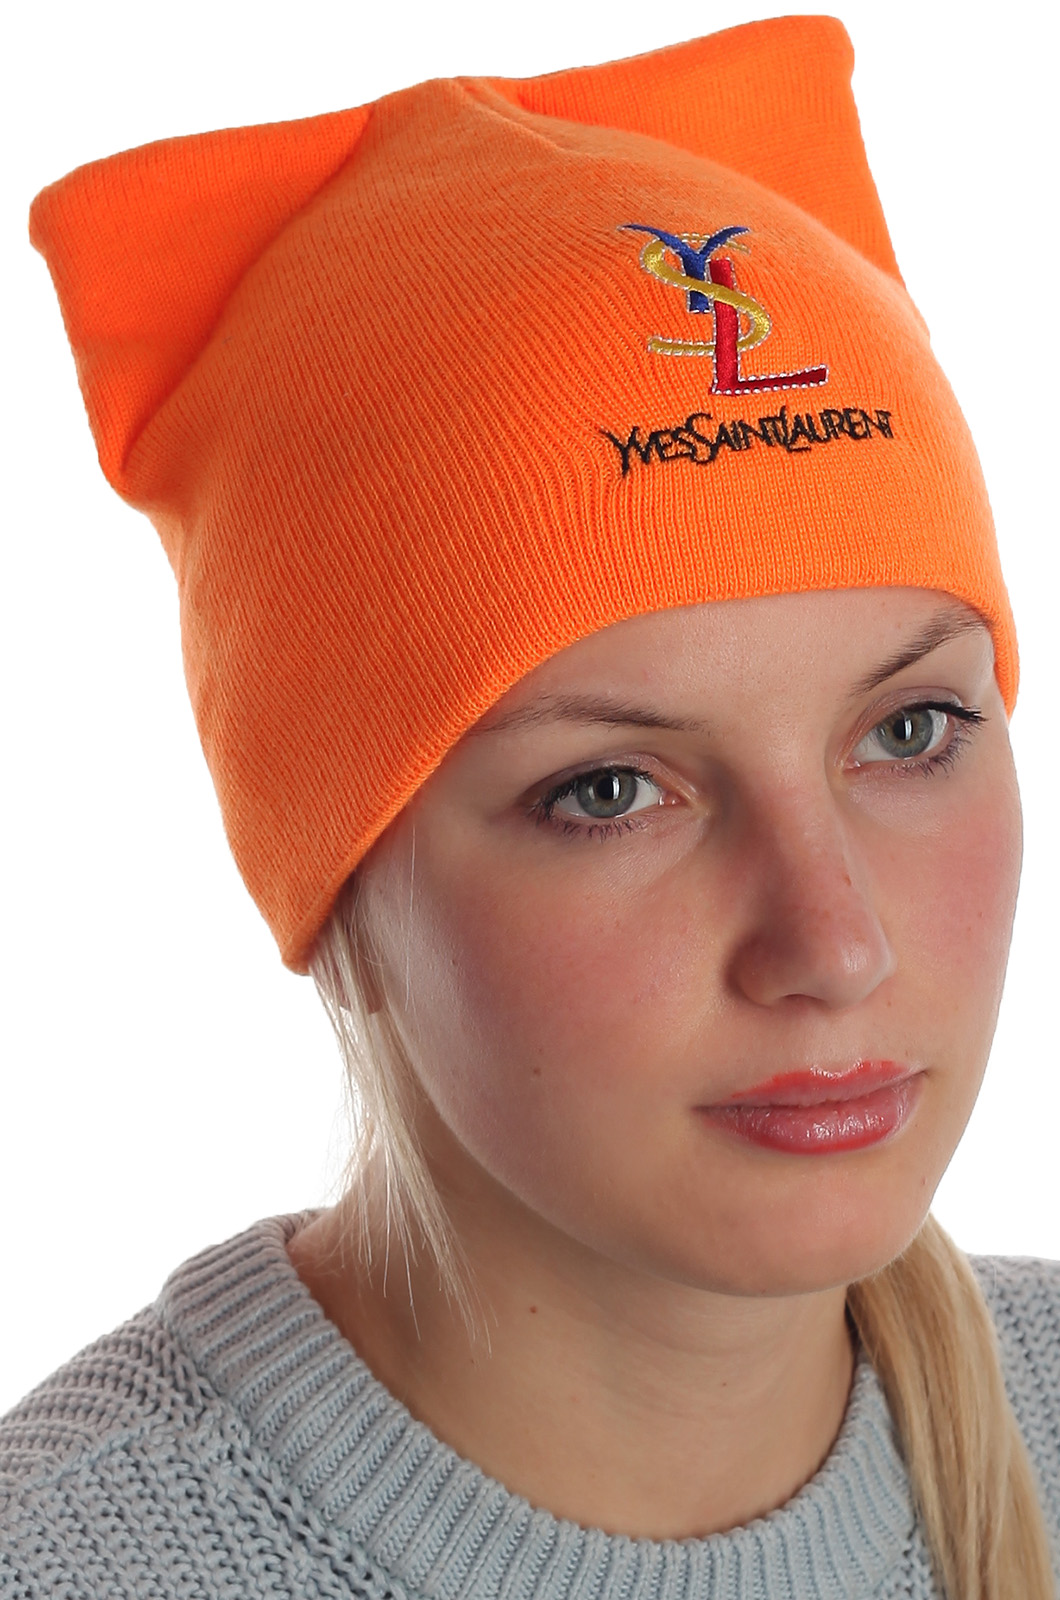 Купить супермодную с ушками шапку Yves Saint Laurent насыщенного оранжевого цвета по стандартной цене